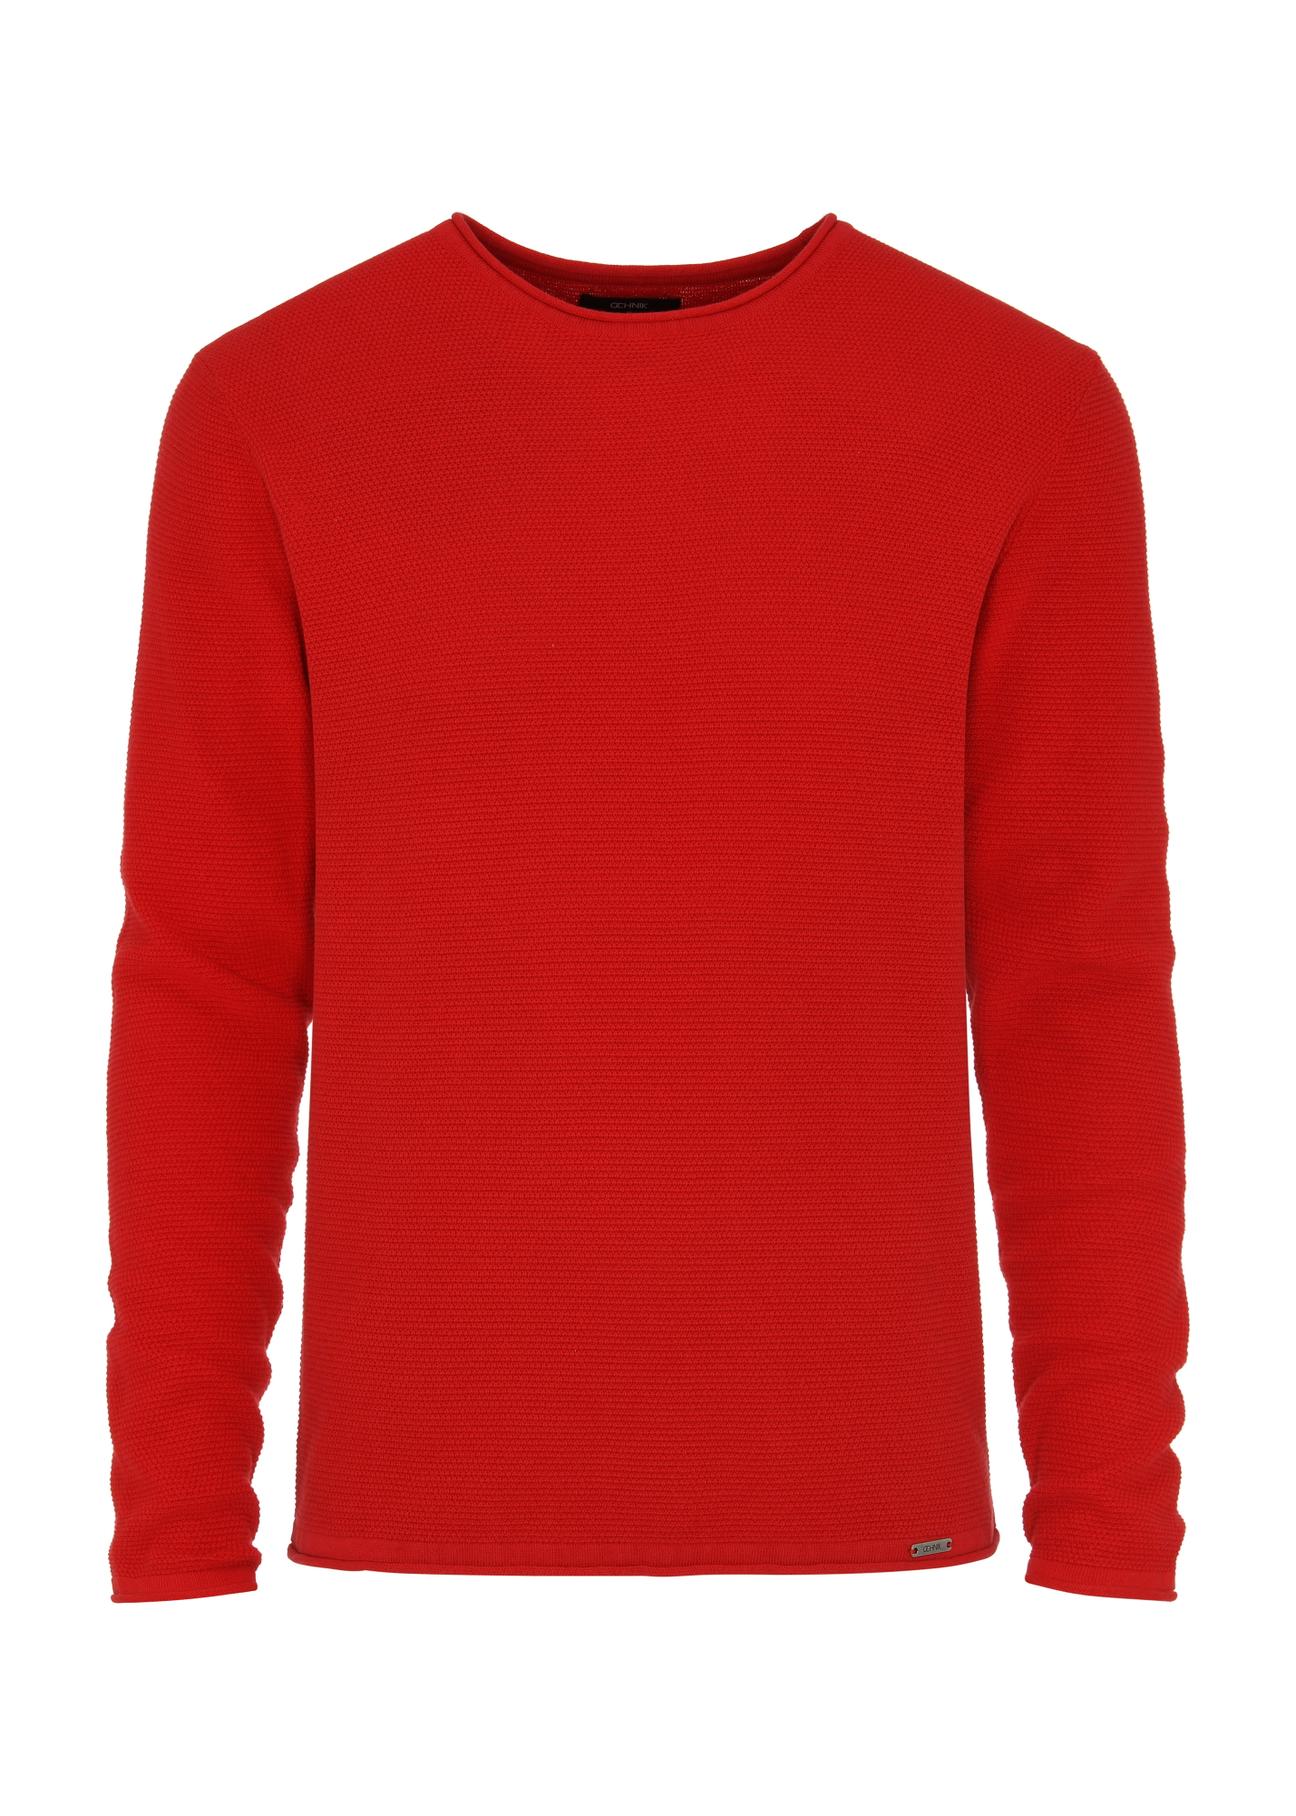 Czerwony sweter męski basic SWEMT-0128-42(W24)